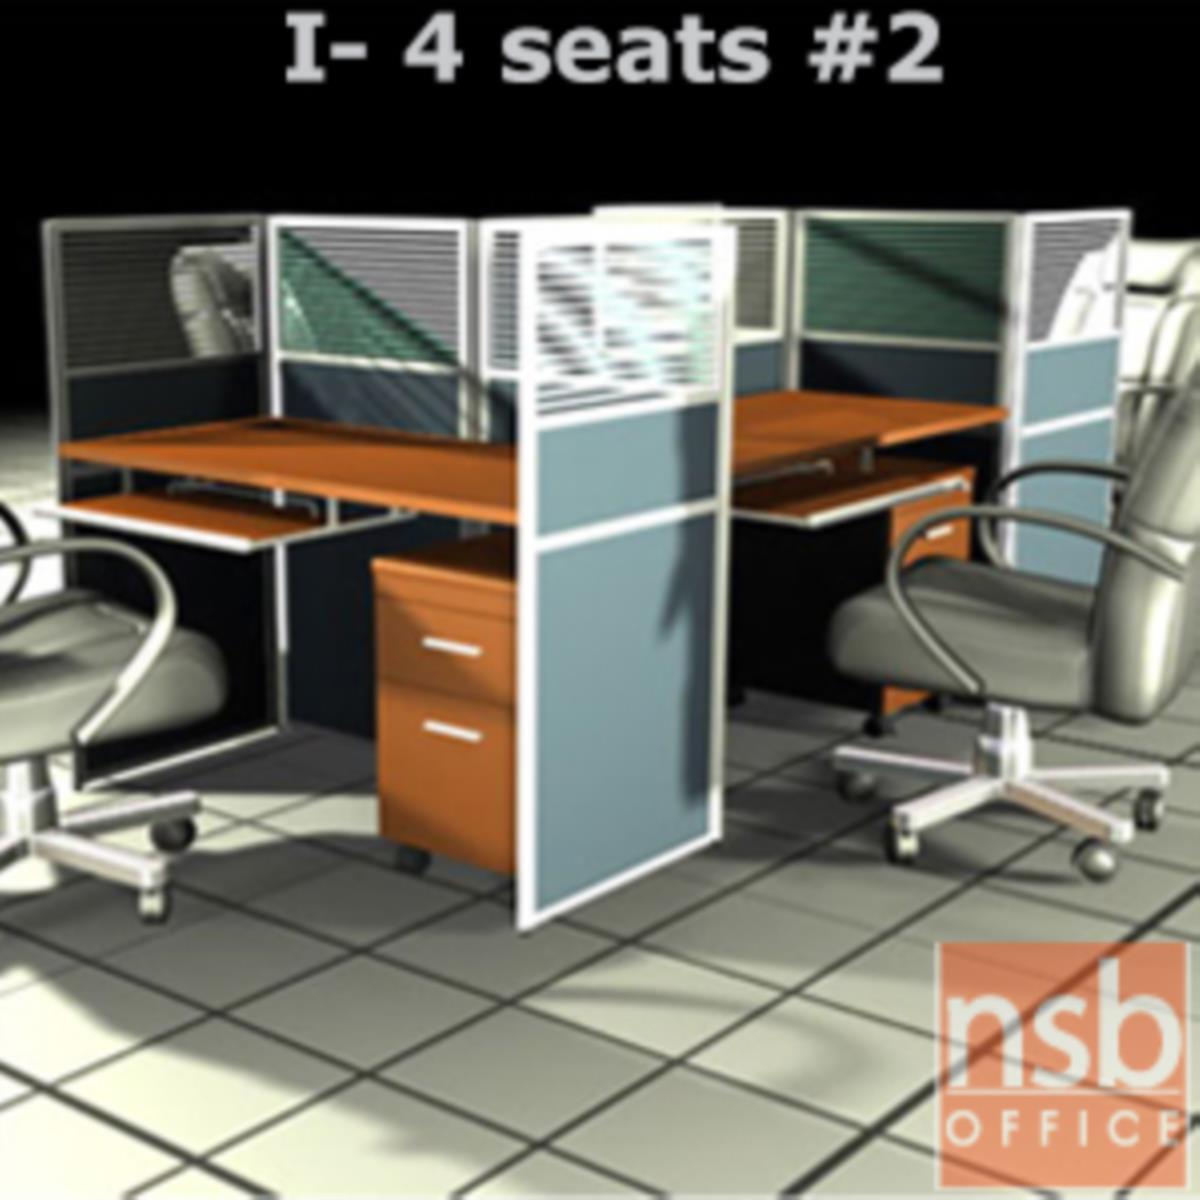 A04A085:ชุดโต๊ะทำงานกลุ่ม 4 ที่นั่ง   ขนาดรวม 244W*126D cm. พร้อมพาร์ทิชั่นครึ่งกระจกขัดลาย